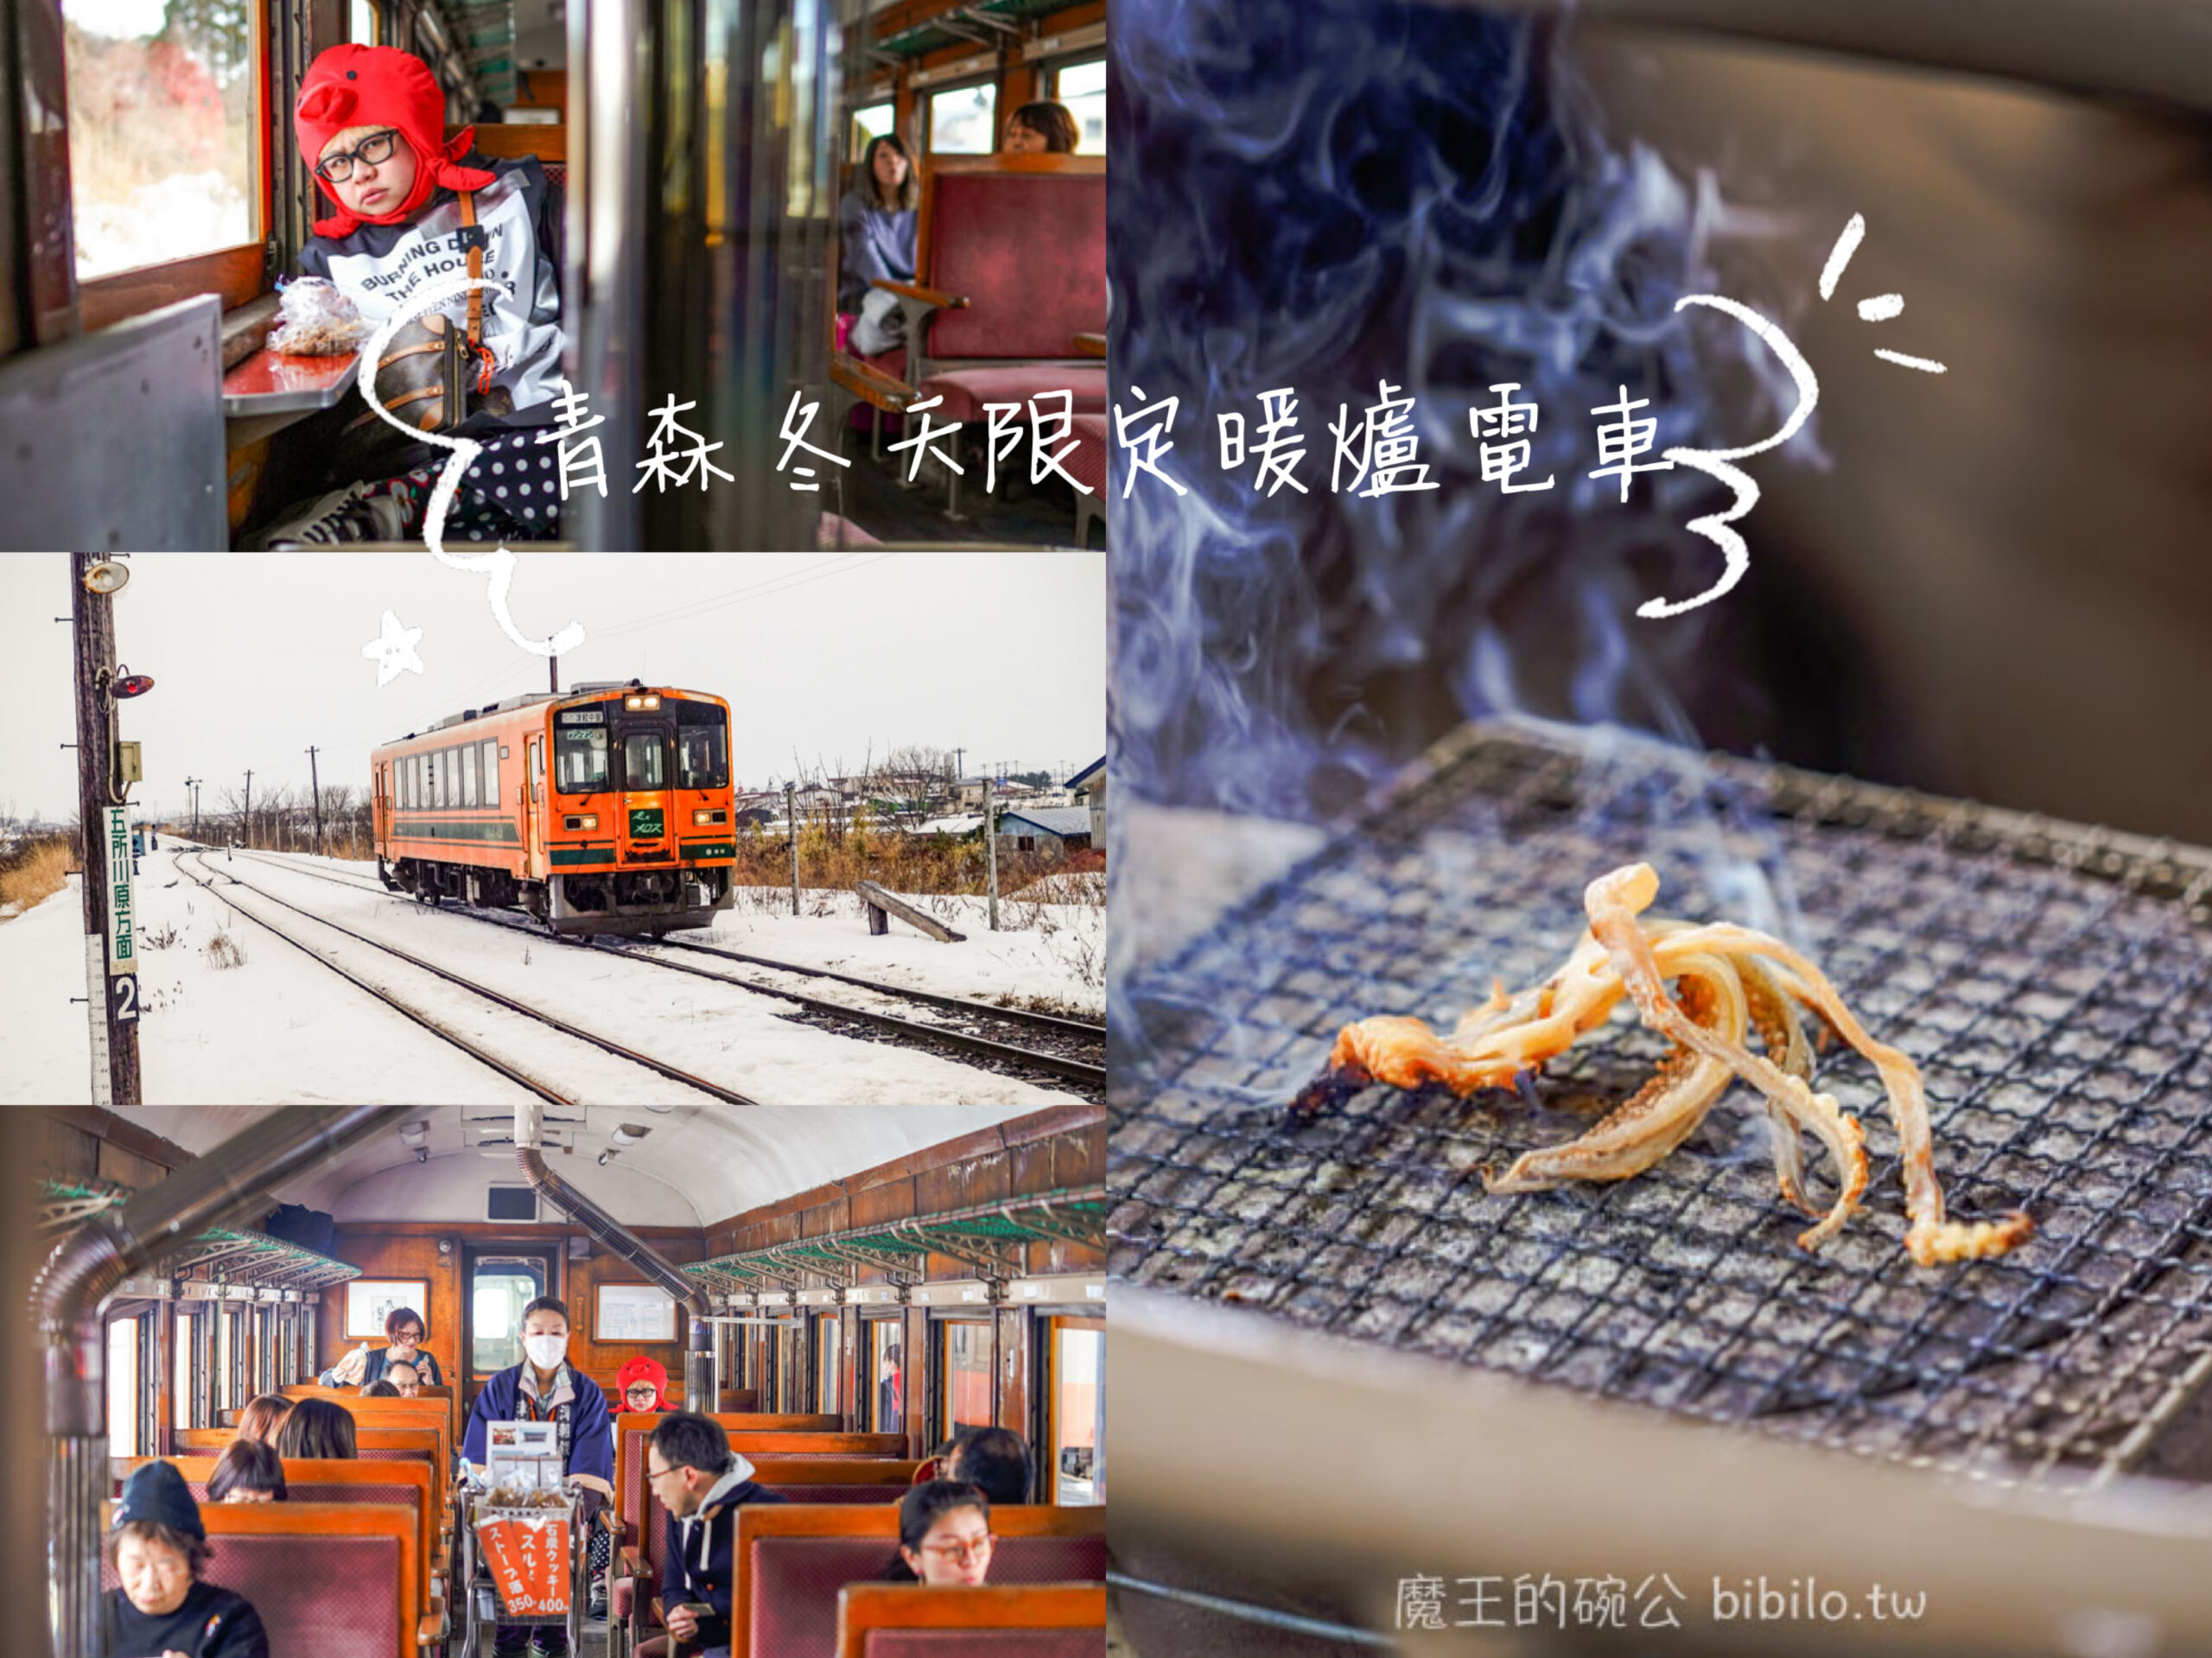 津輕鐵道 暖爐電車X魔王 青森冬天限定烤魷魚電車 日本東北特色電車